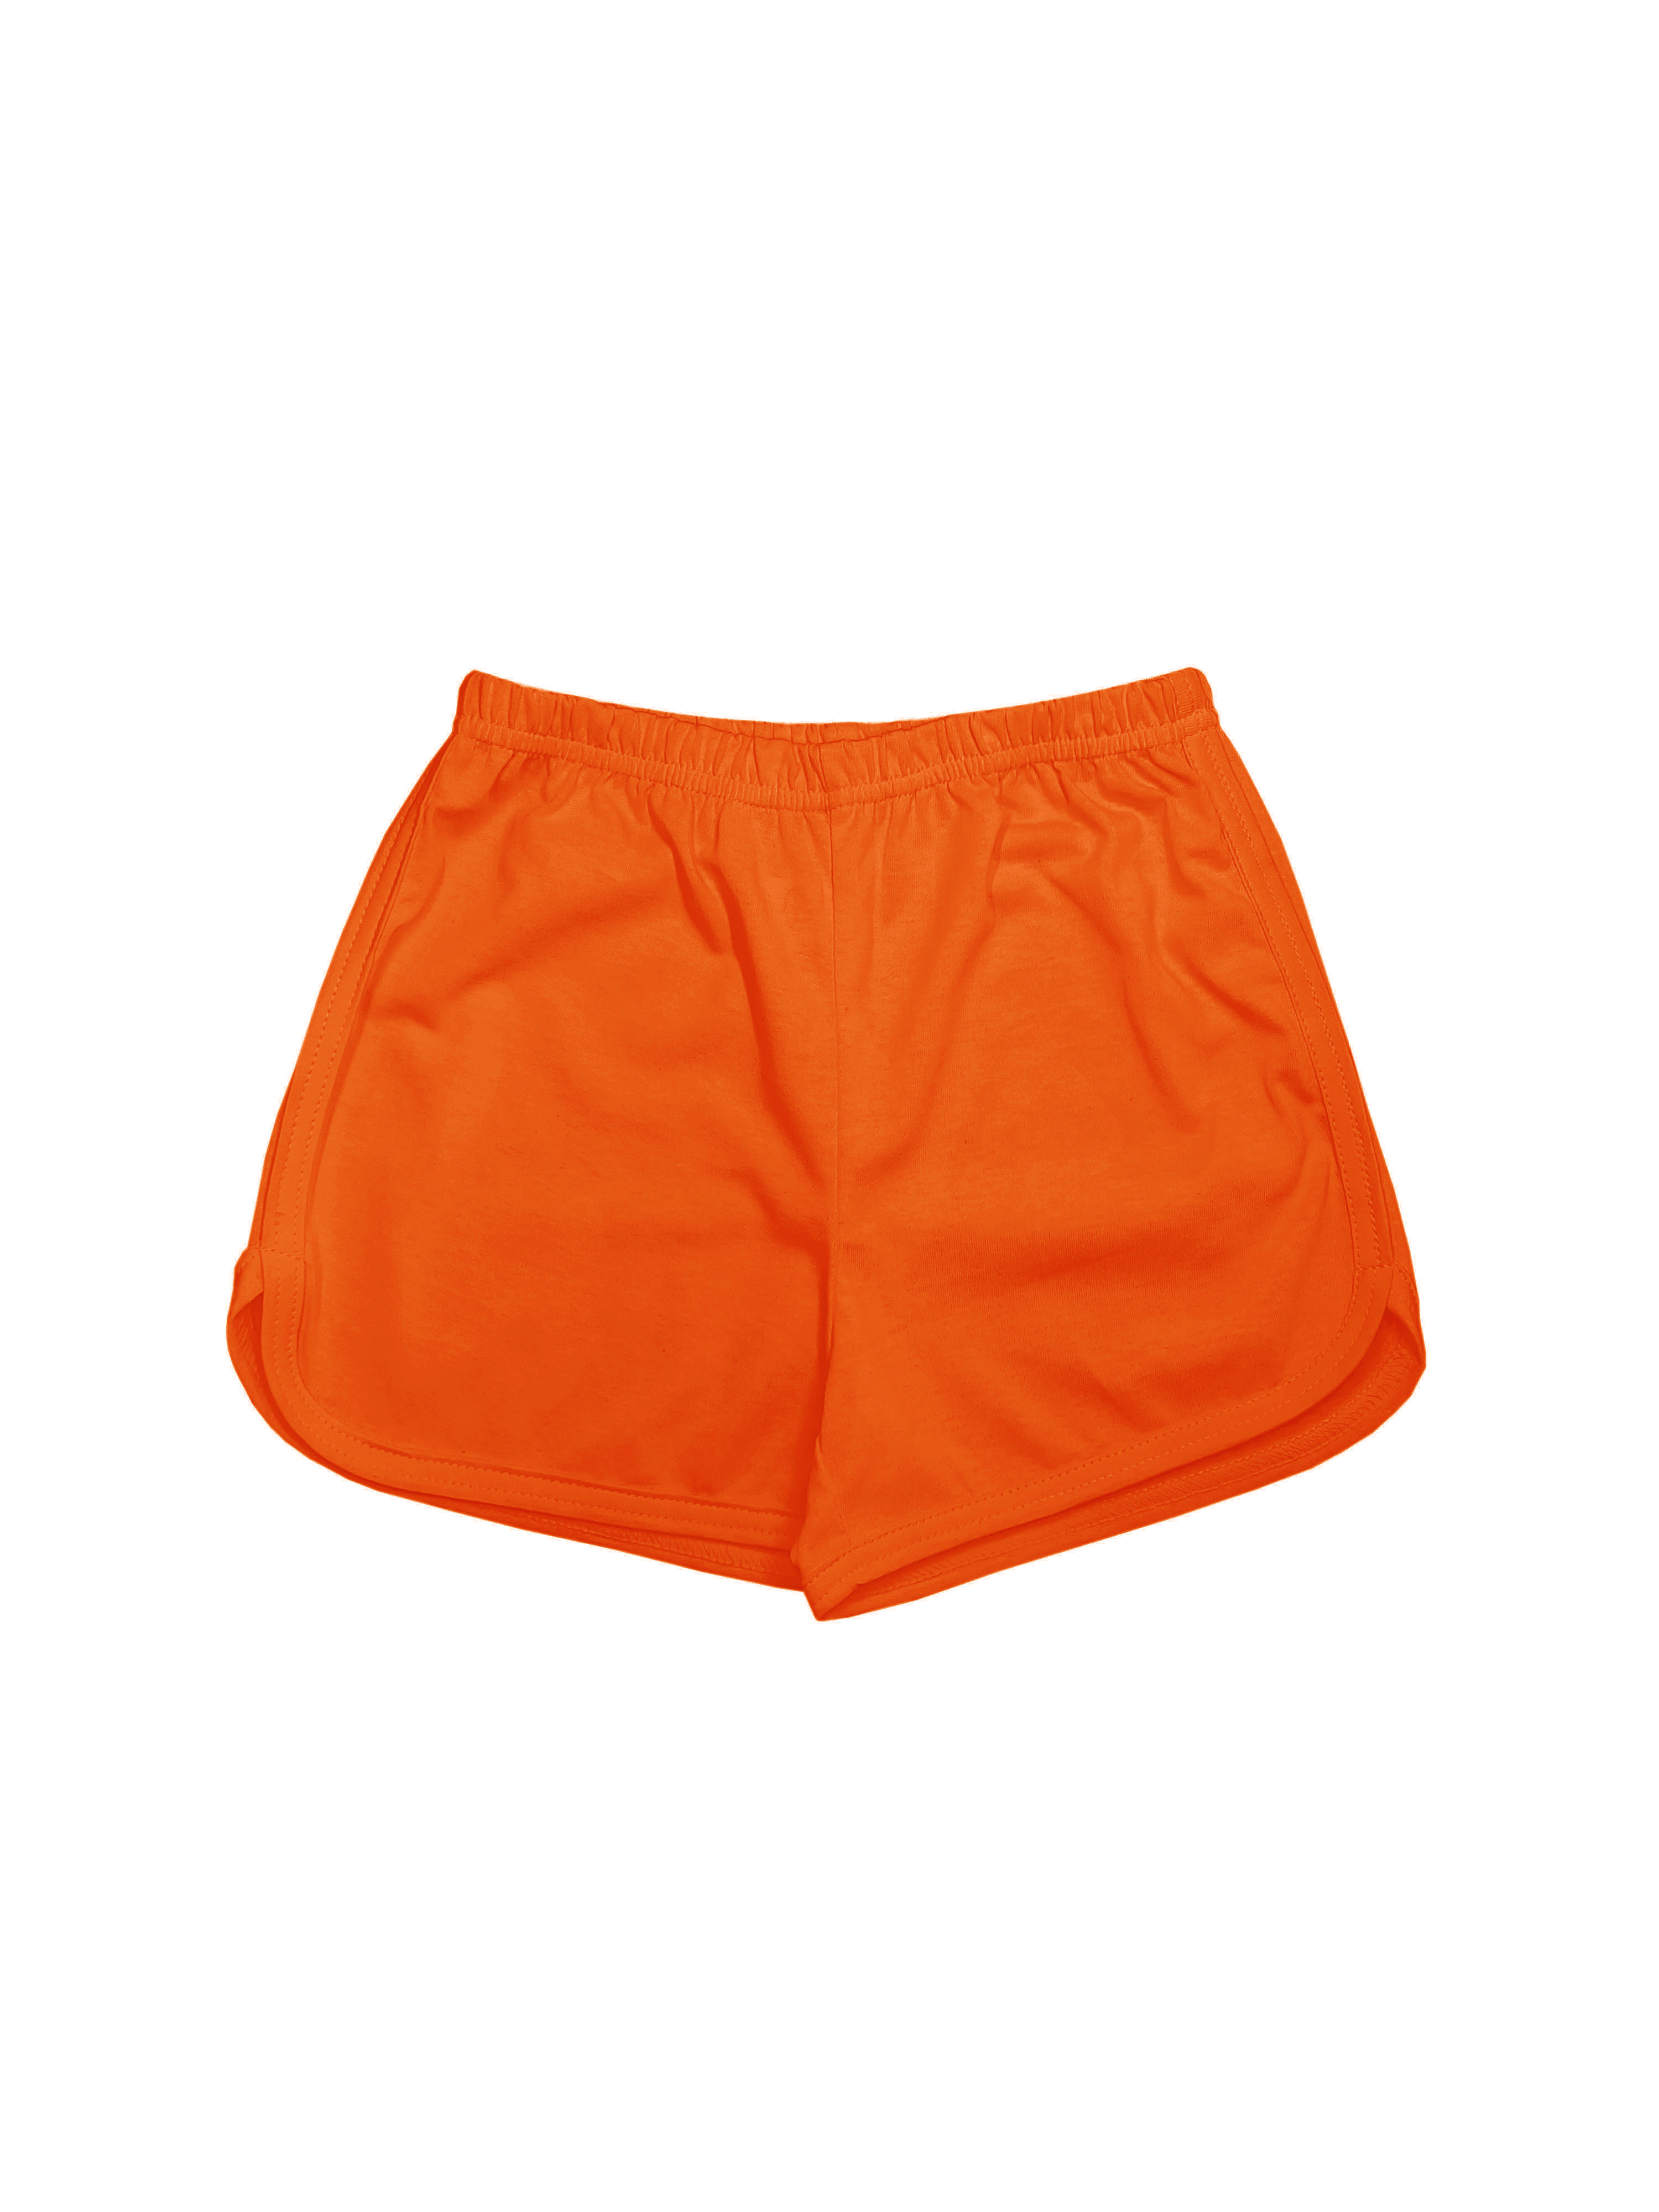 Шорты детские Детрик ШД-0322, оранжевый, 134 мяч для художественной гимнастики однотонный d15см torres пвх ag 15 04 оранжевый